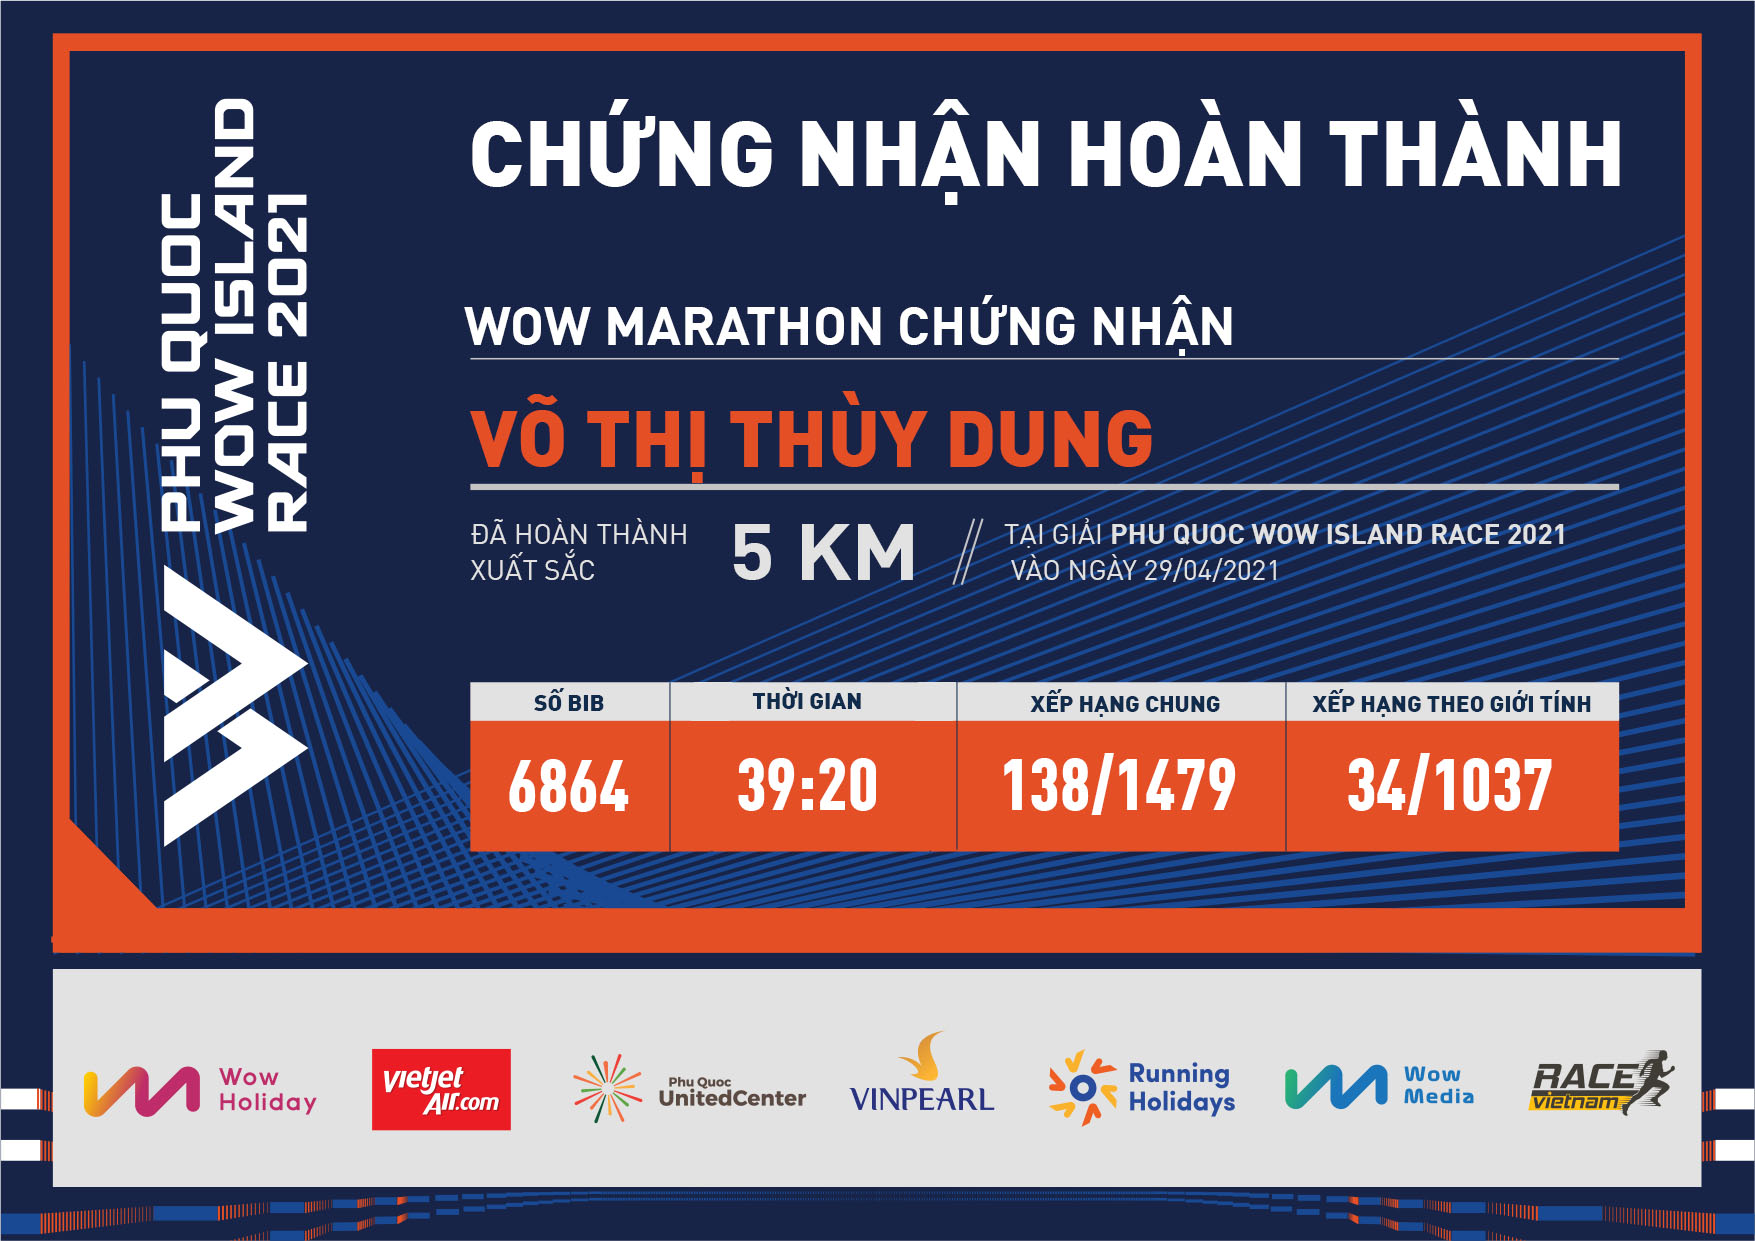 6864 - Võ Thị Thùy Dung